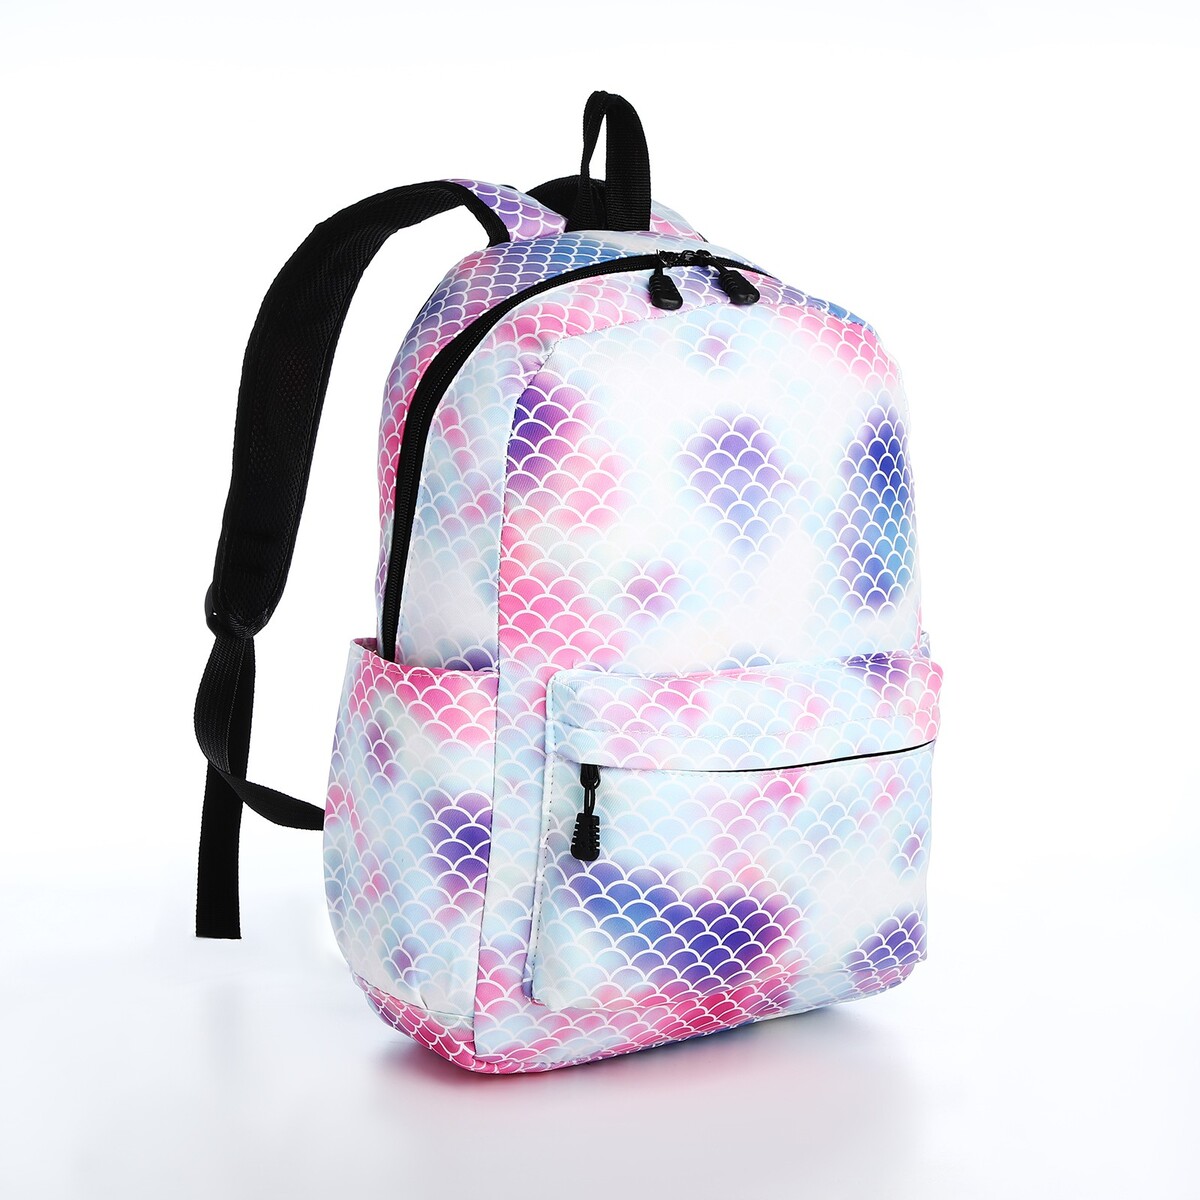 Рюкзак молодежный из текстиля на молнии, 3 кармана, поясная сумка, цвет голубой/белый/розовый